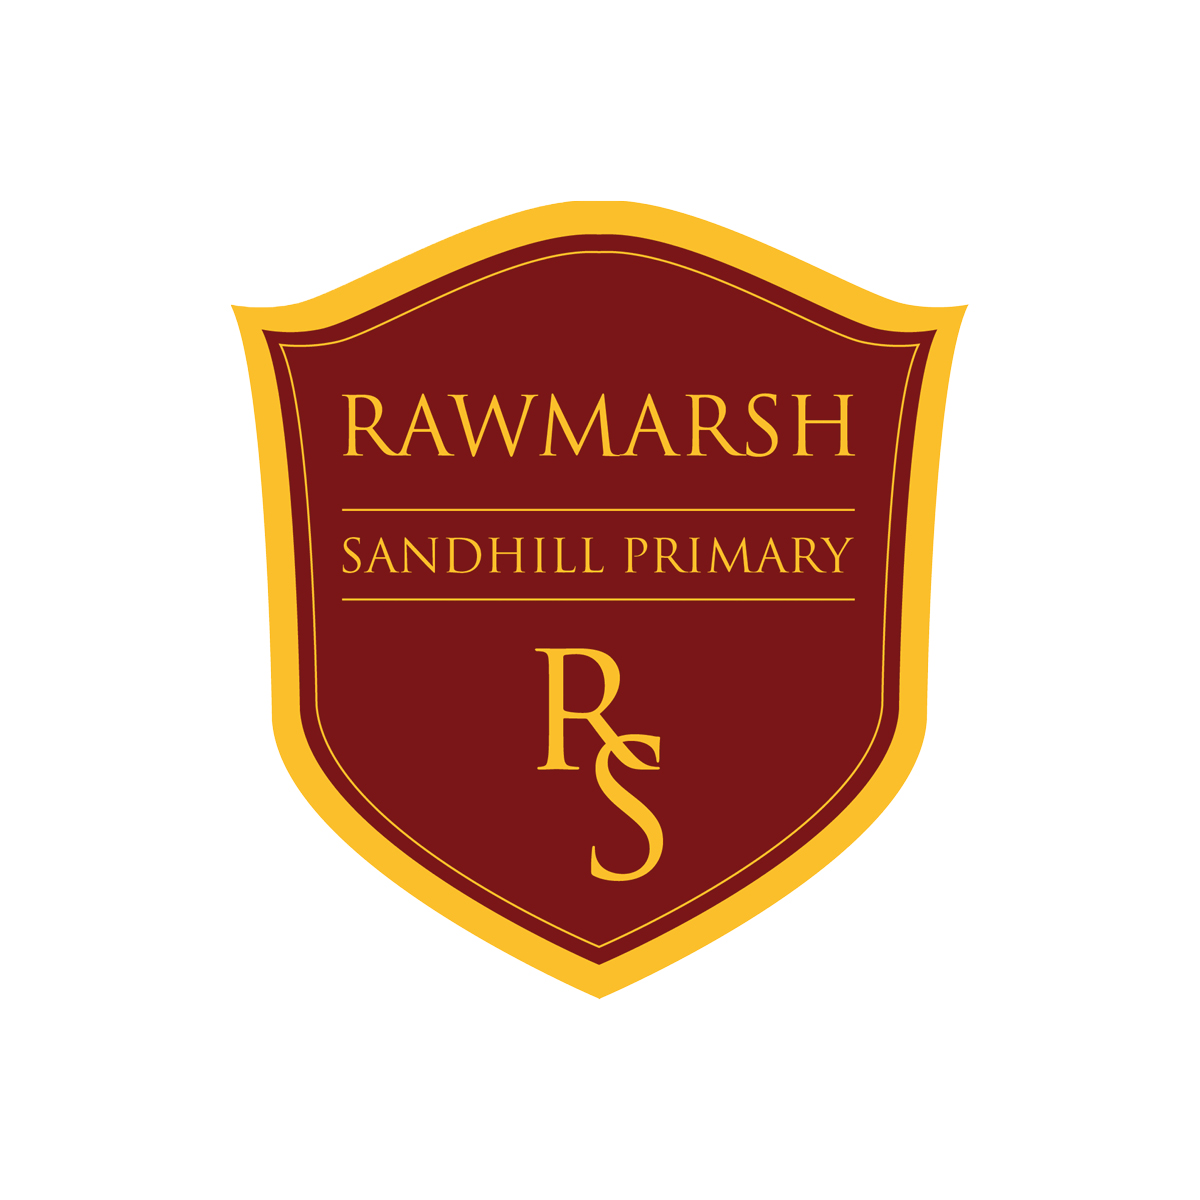 Rawmarsh Sandhill Primary